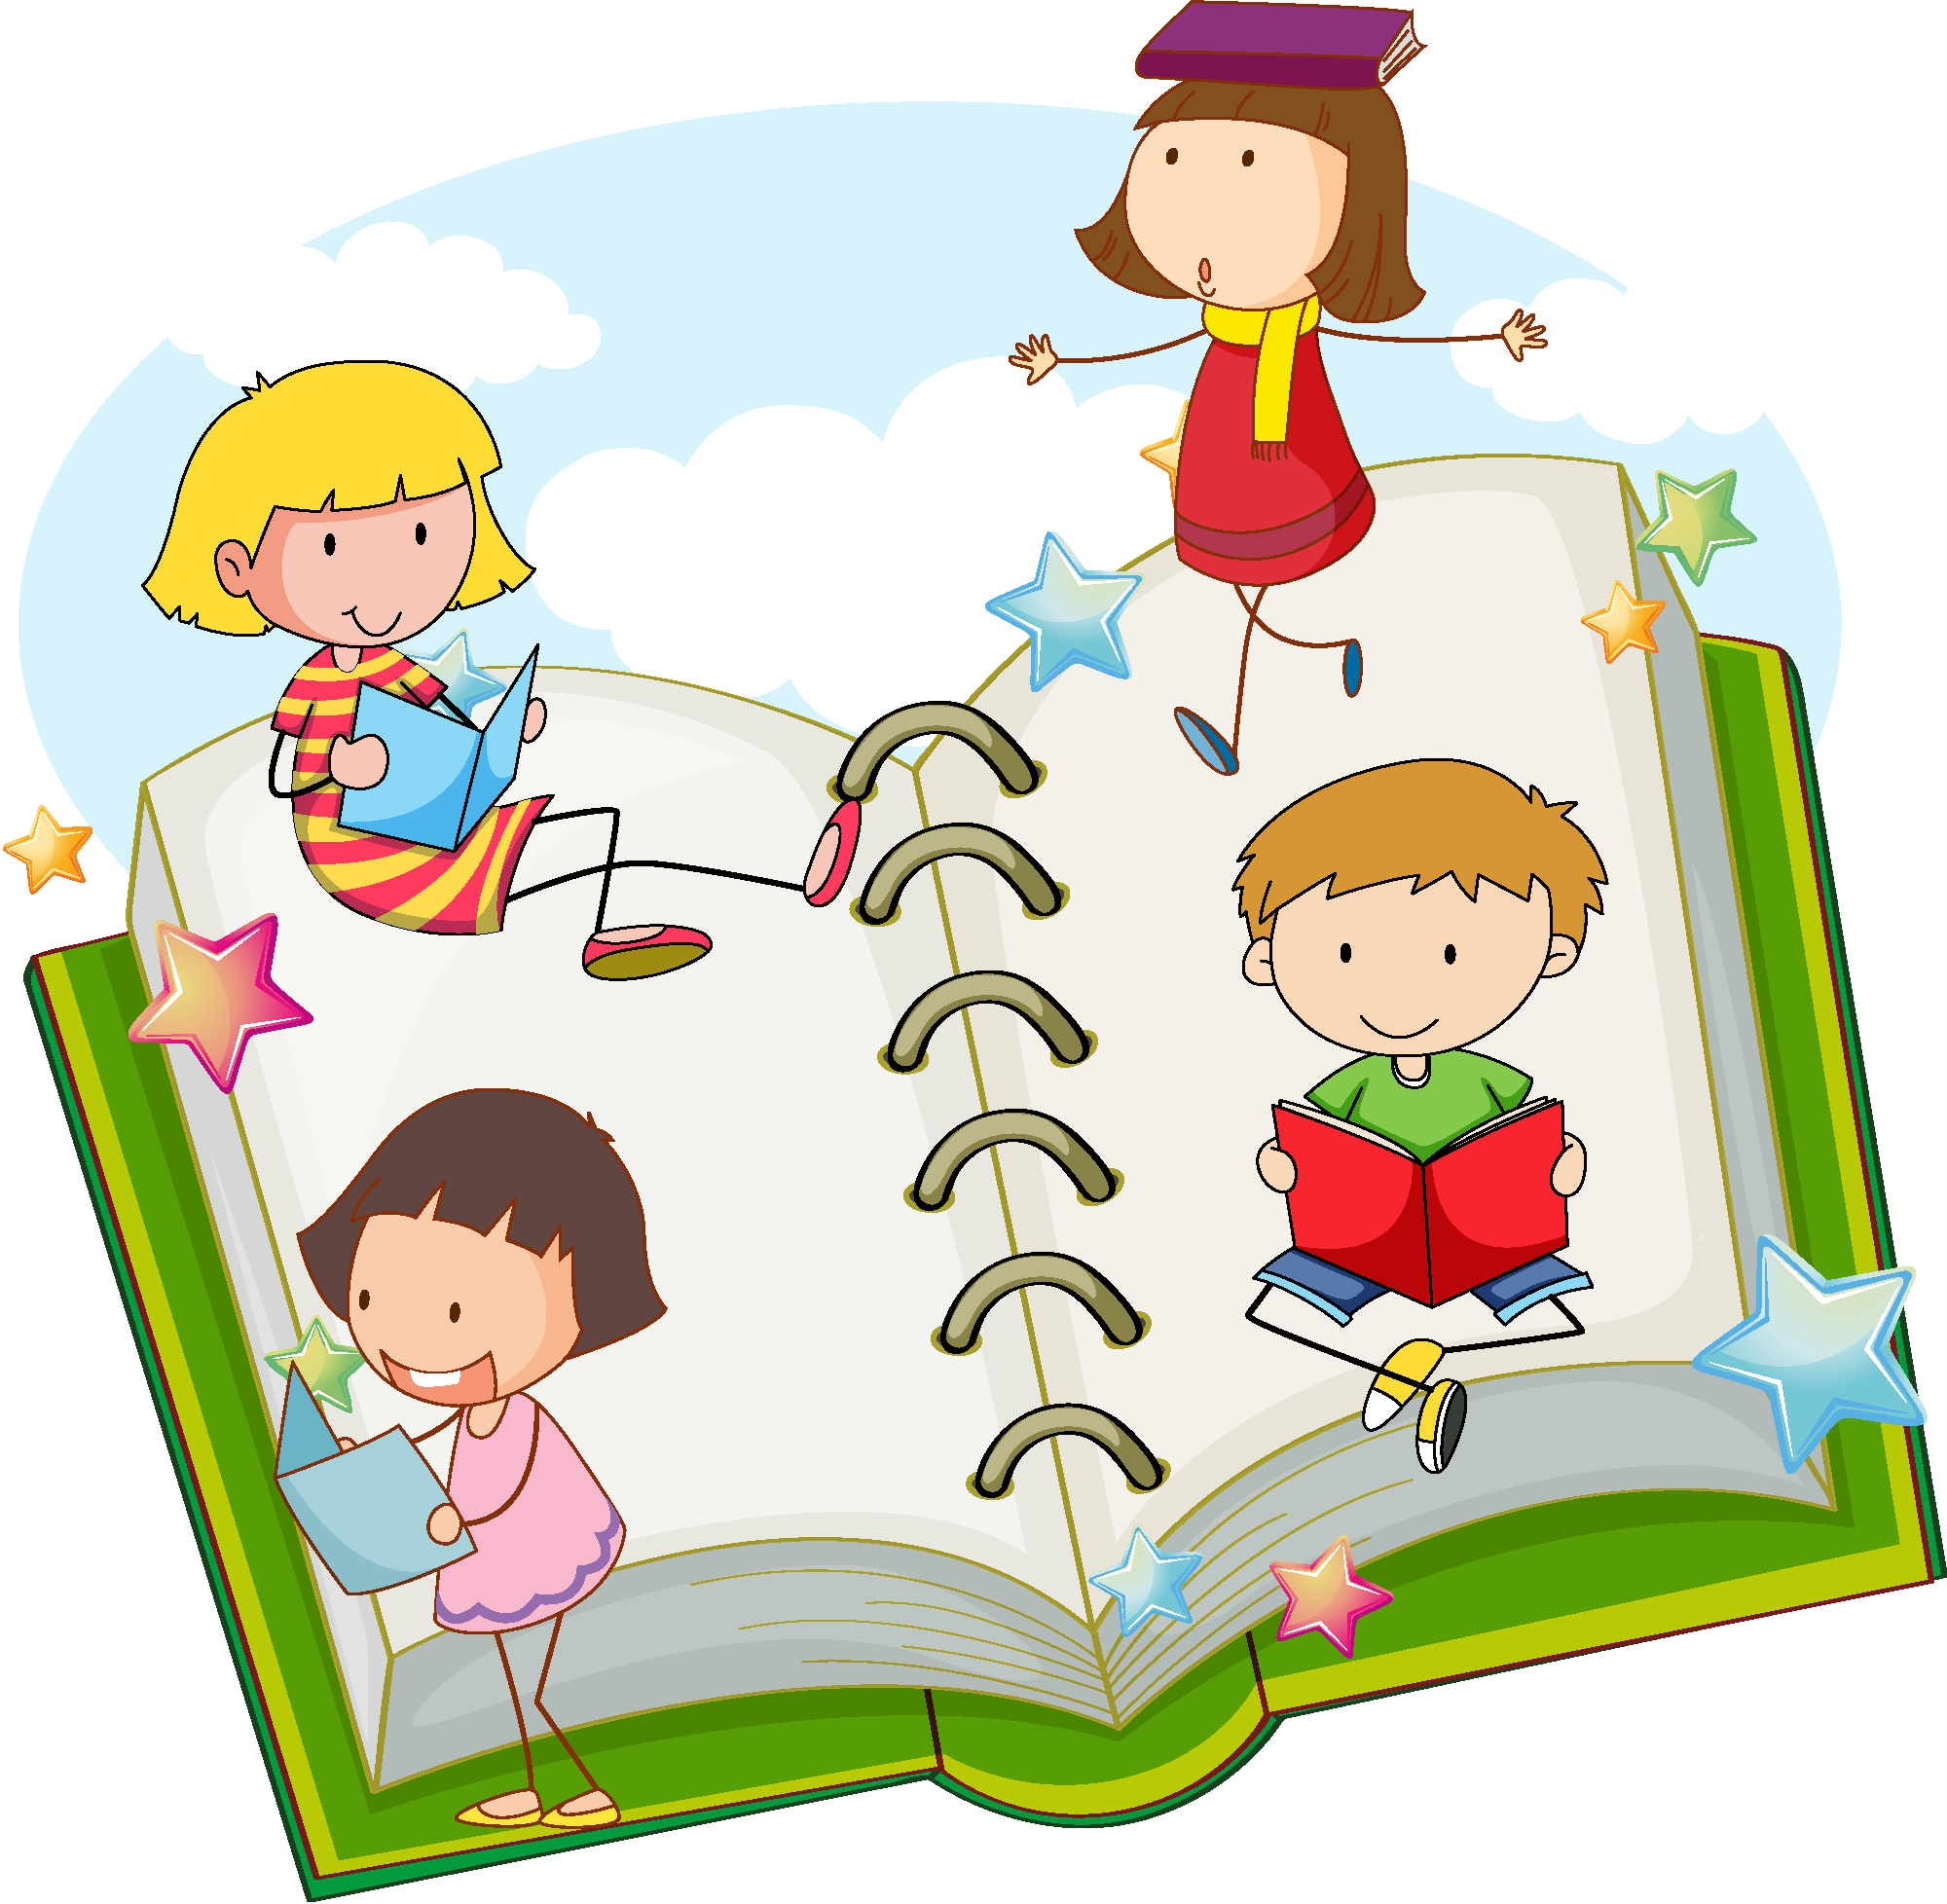 看书学习的儿童矢量素材,蓝天,白云,绿色,书本,翻开,笔记 